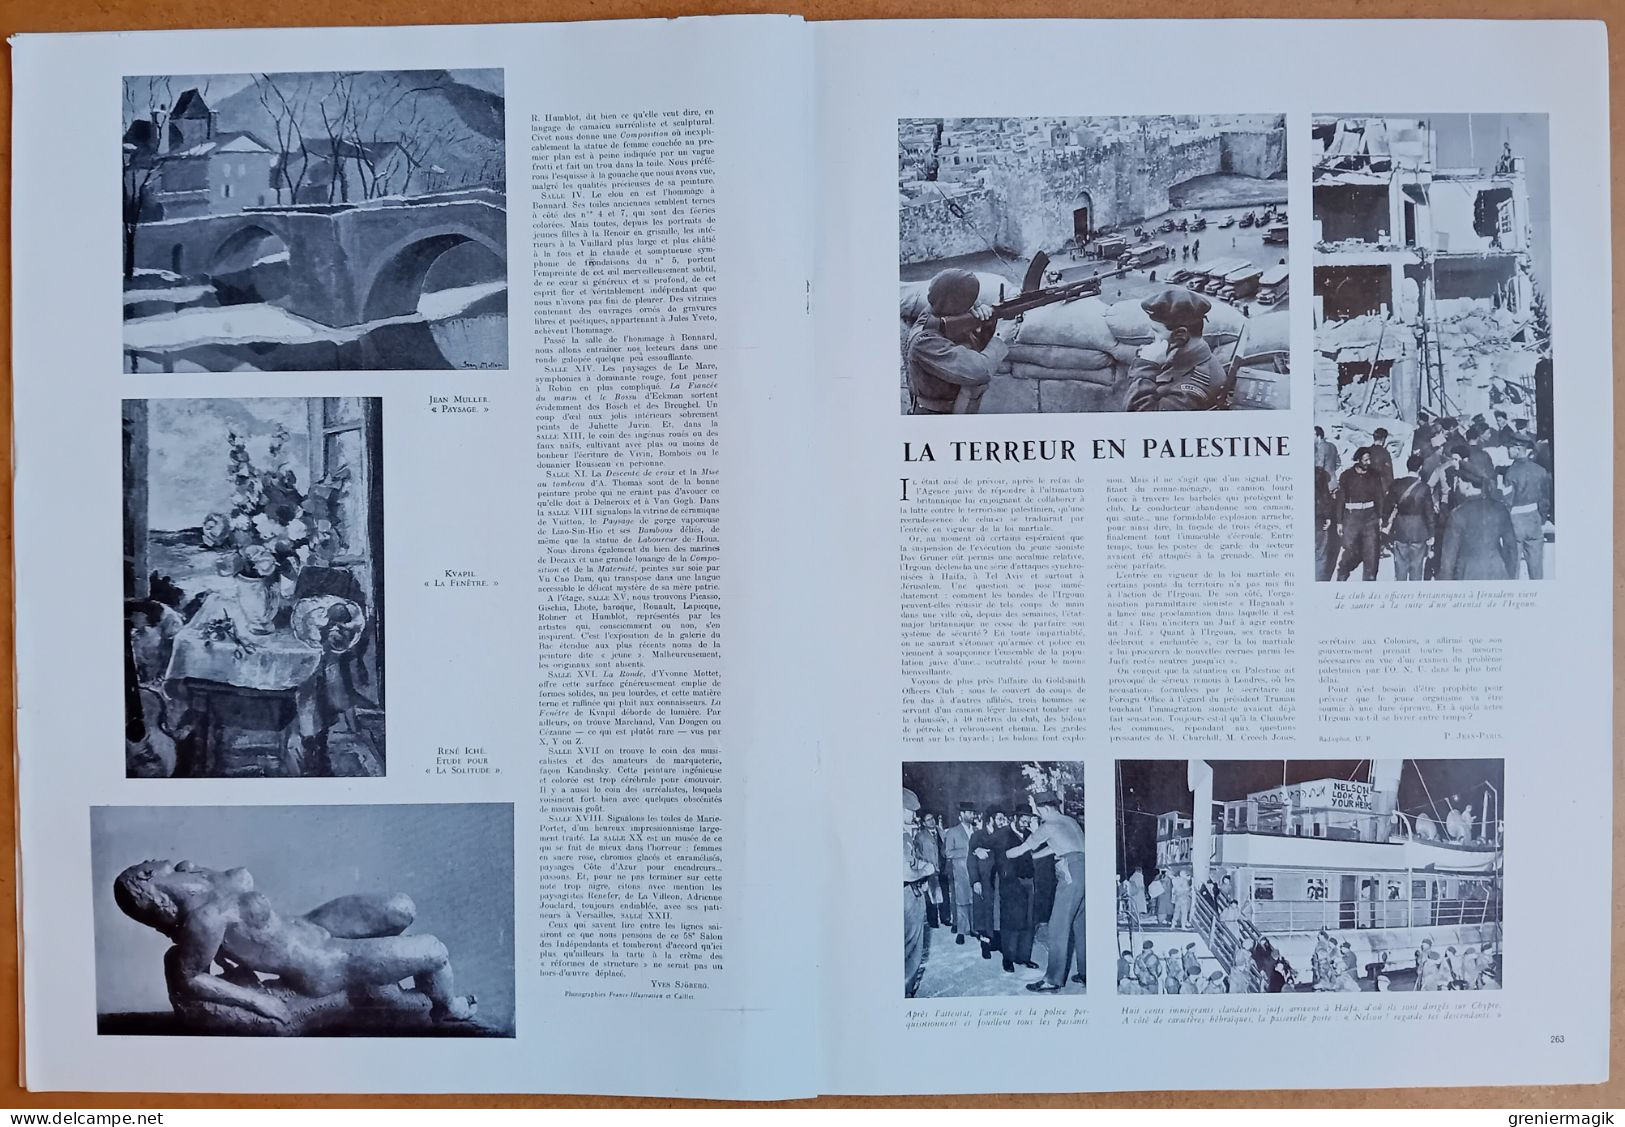 France Illustration N°76 15/03/1947 Attentats de l'Irgoun en Palestine/Sécurité aérienne/Traité de Dunkerque/Byrd